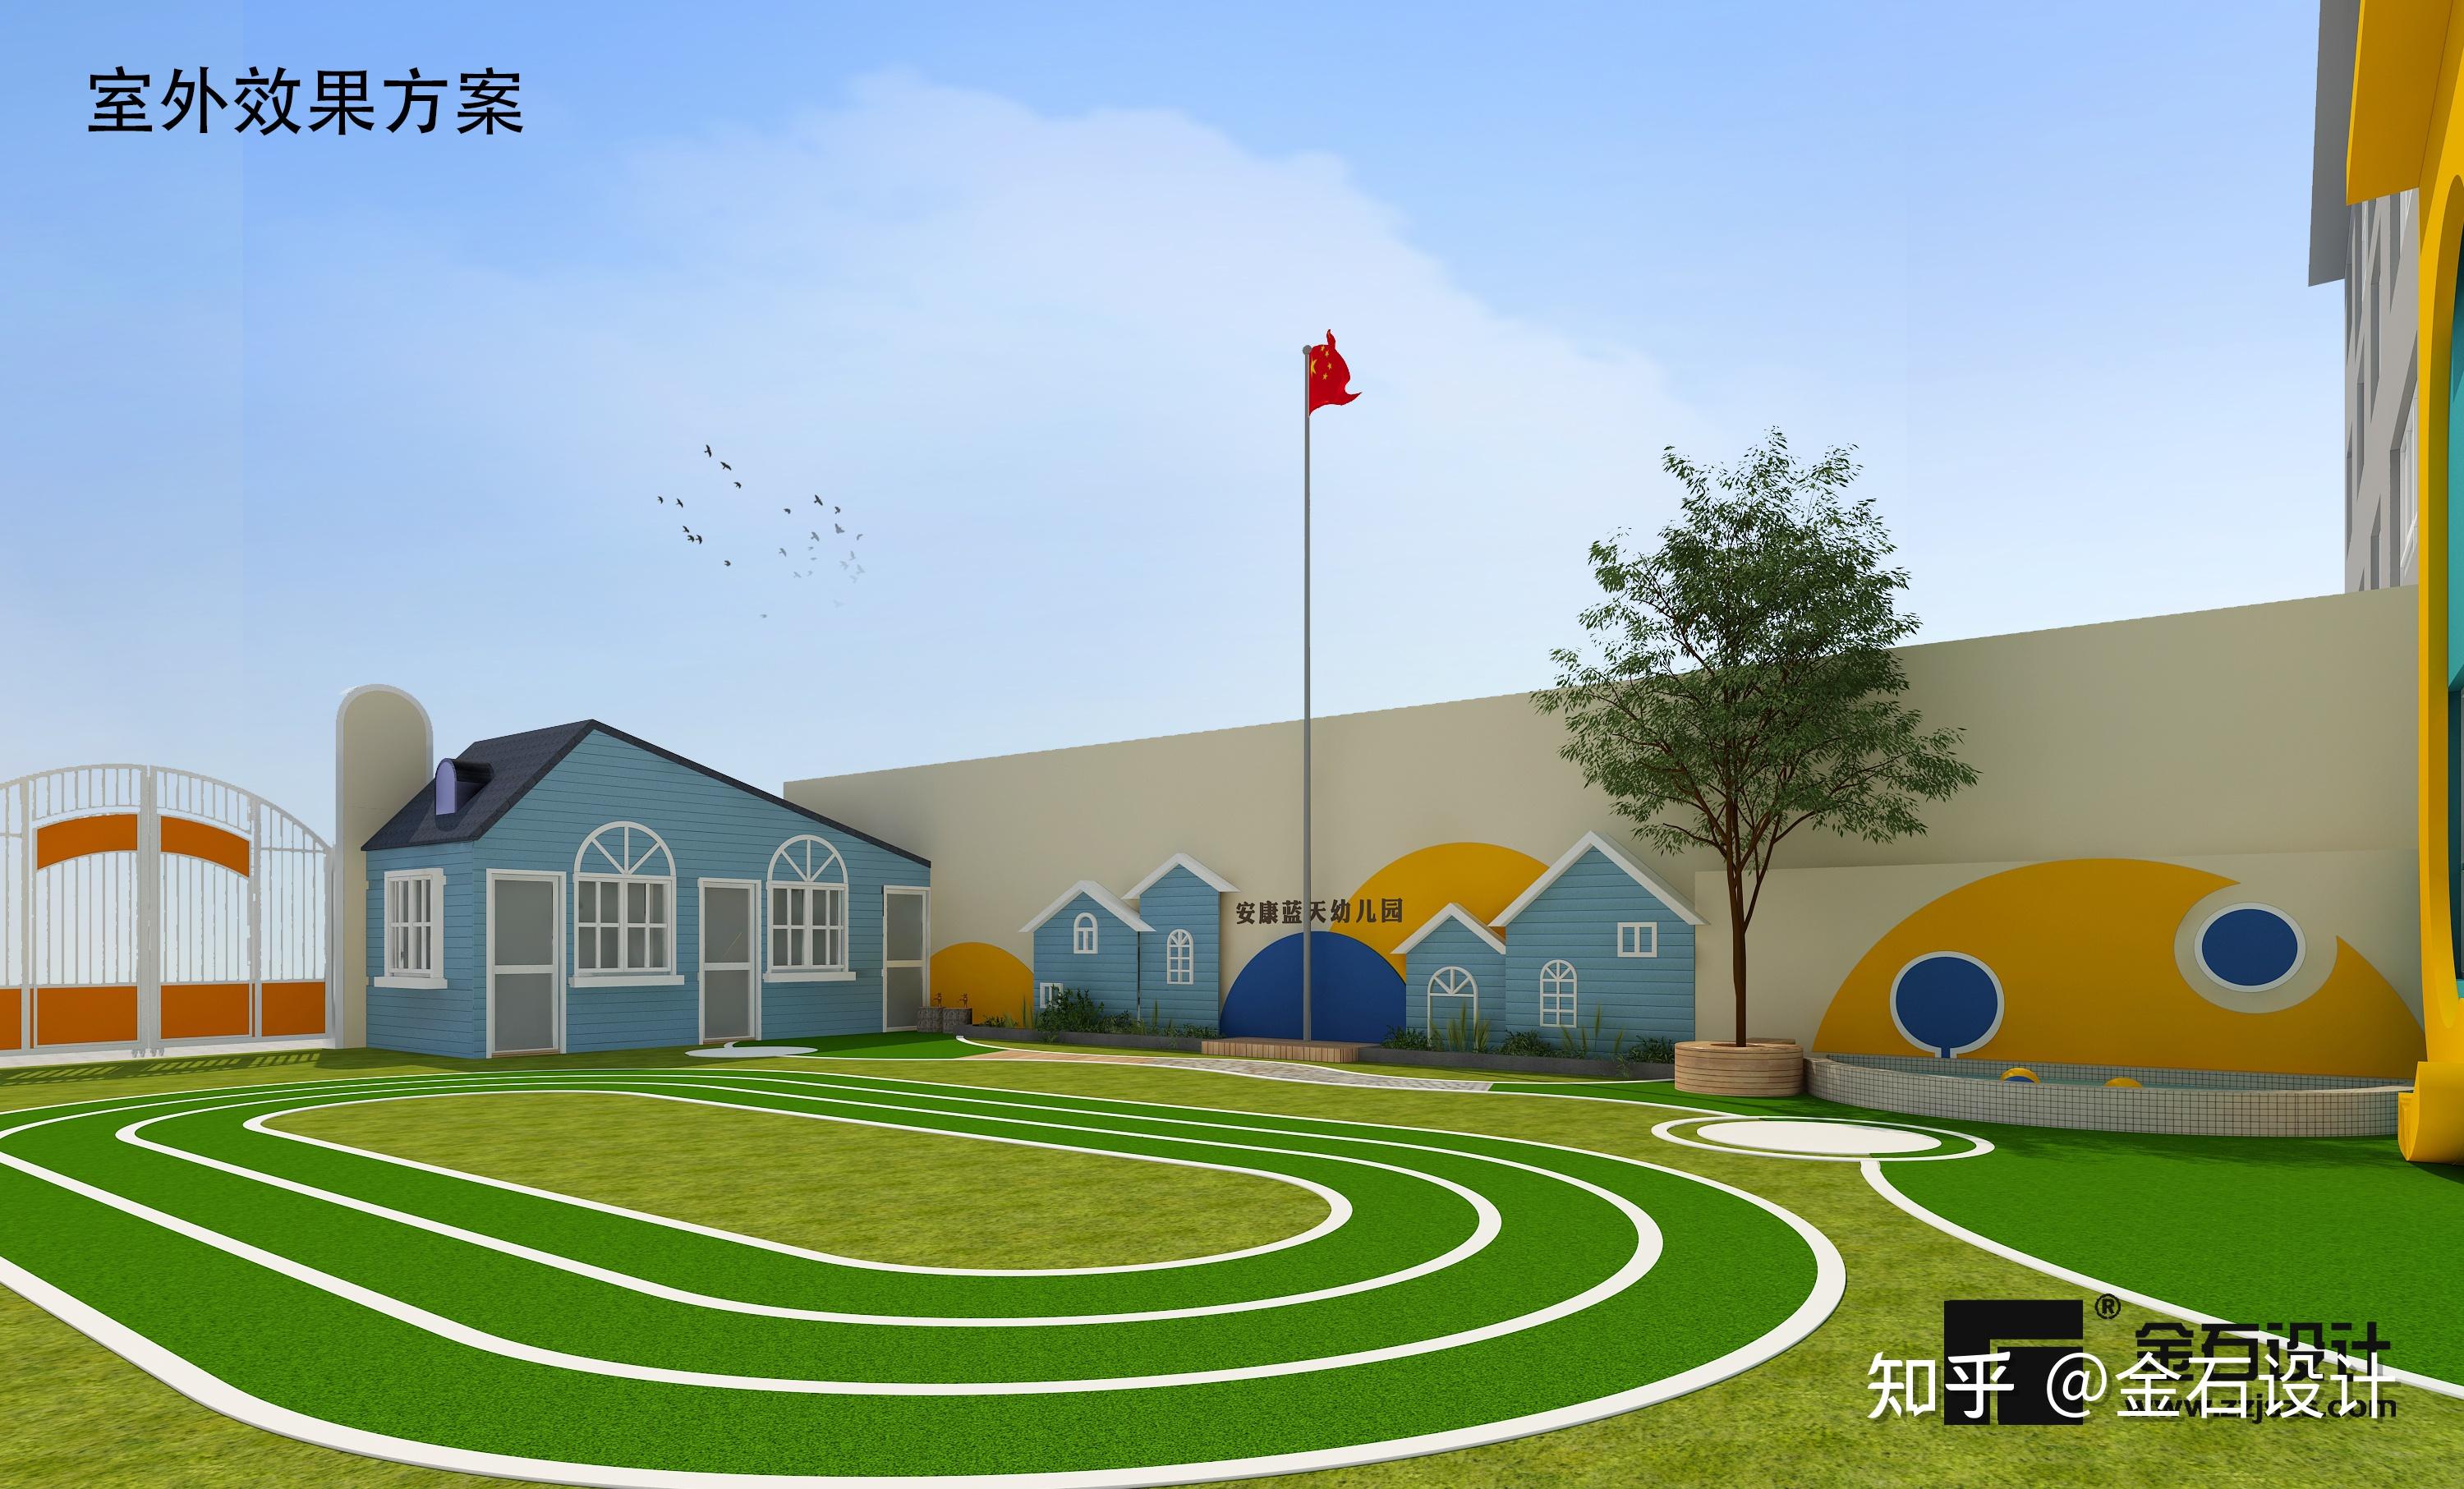 现代幼儿园建筑外观3d模型下载_ID11566675_3dmax免费模型-欧模网